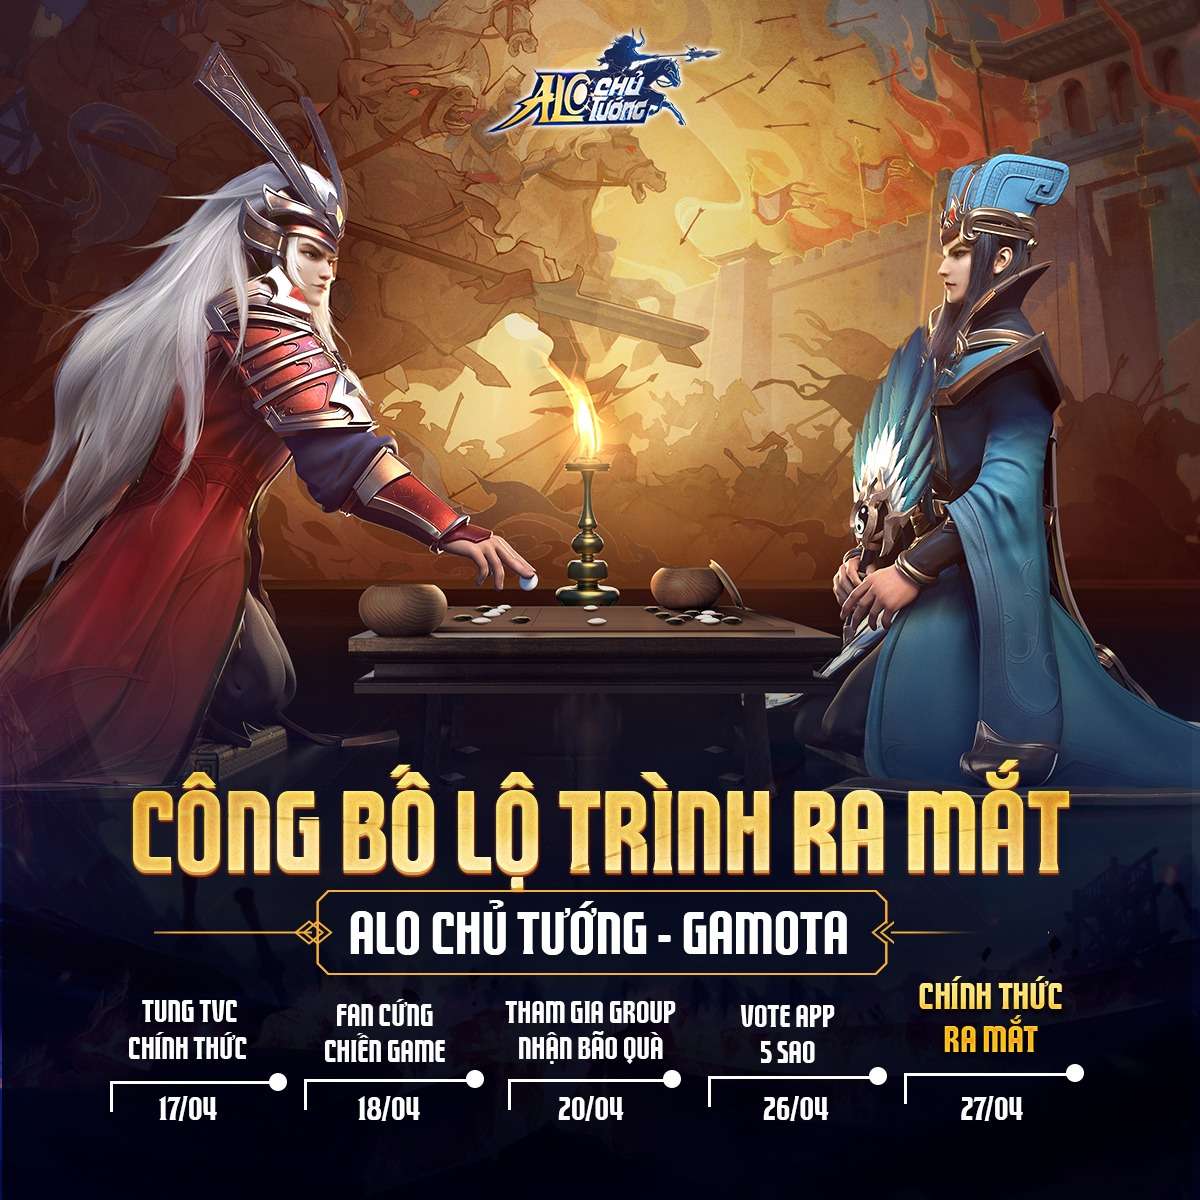 Alo Chủ Tướng: Tựa game khiến dân tình trông mong đã ấn định ngày ra mắt chính thức tại Việt Nam